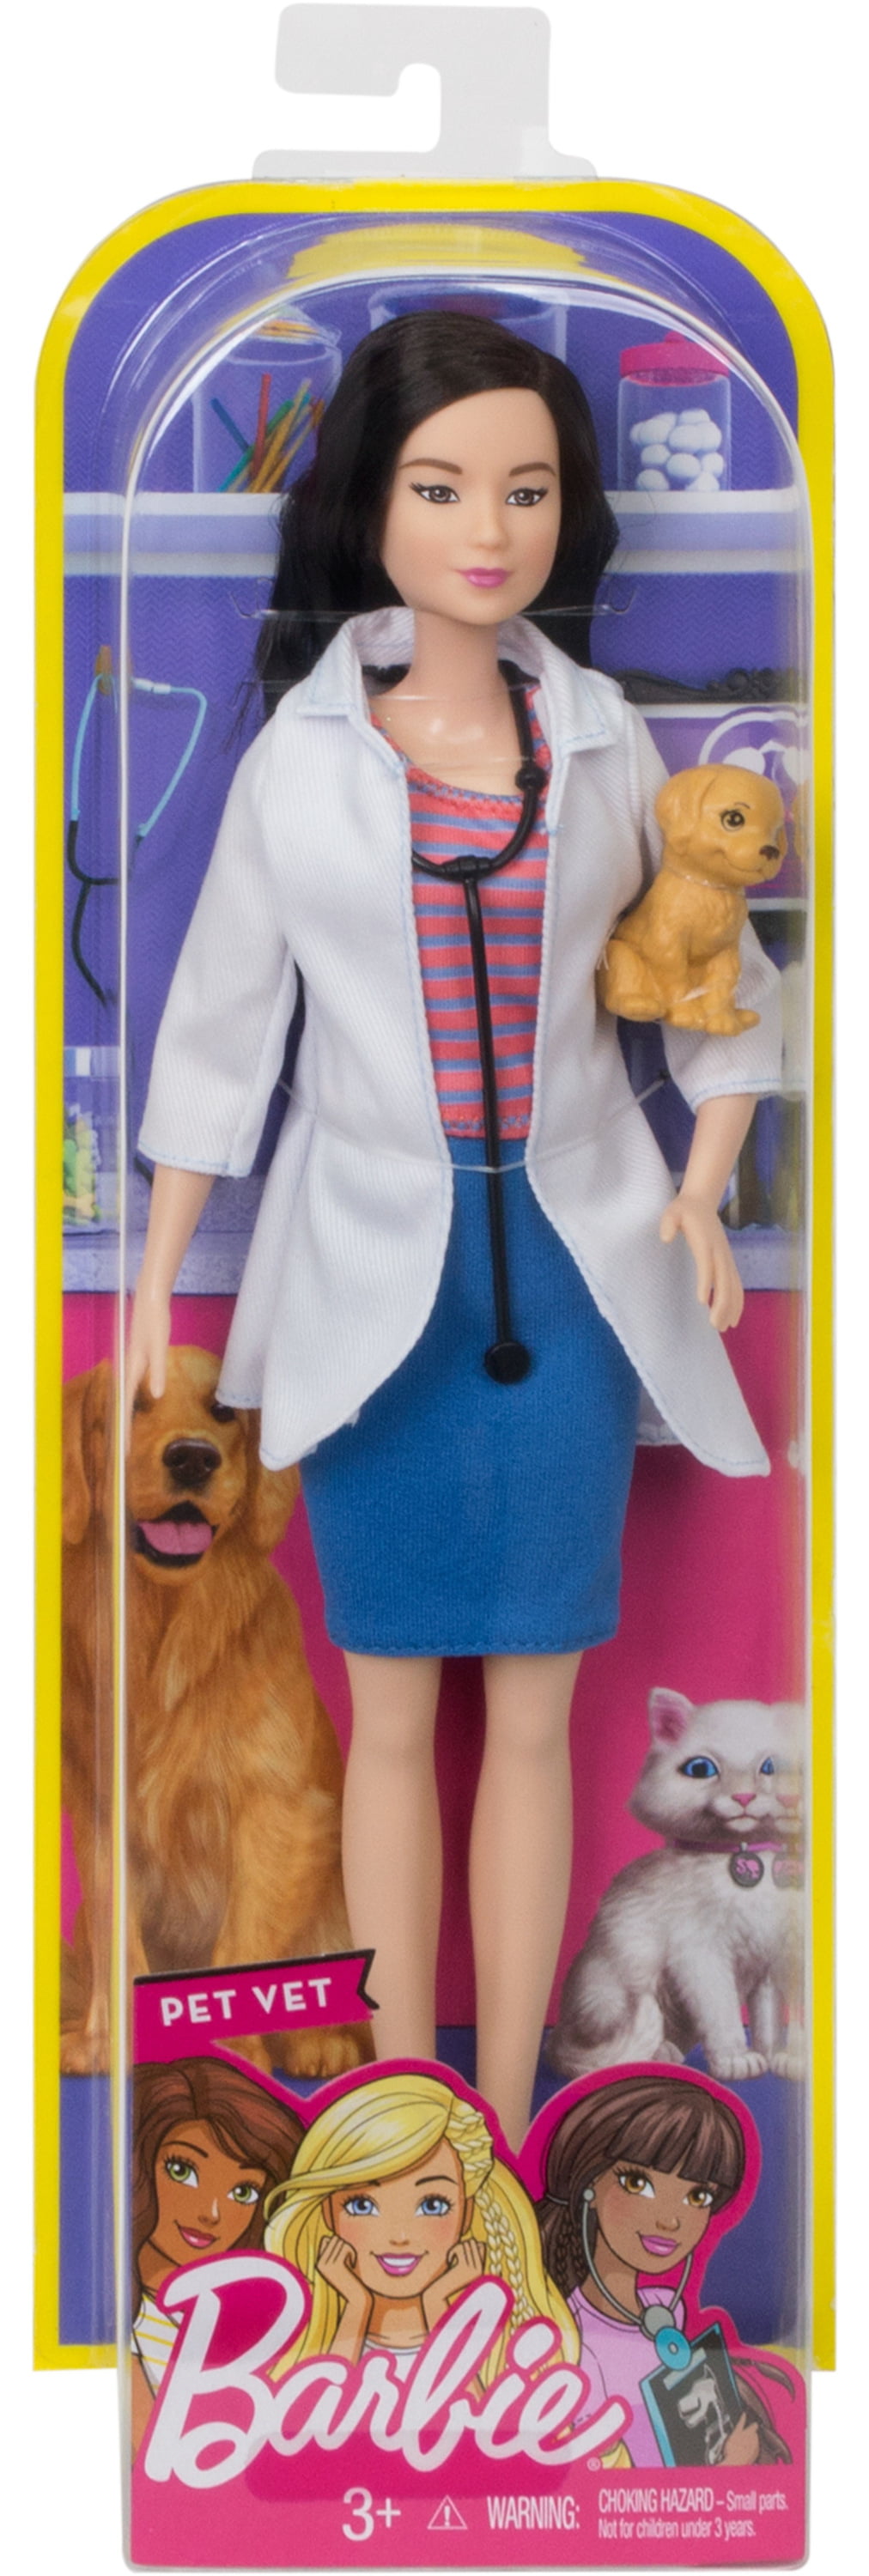 Barbie Avastars Pet Vet Outfit 4 Pieces!